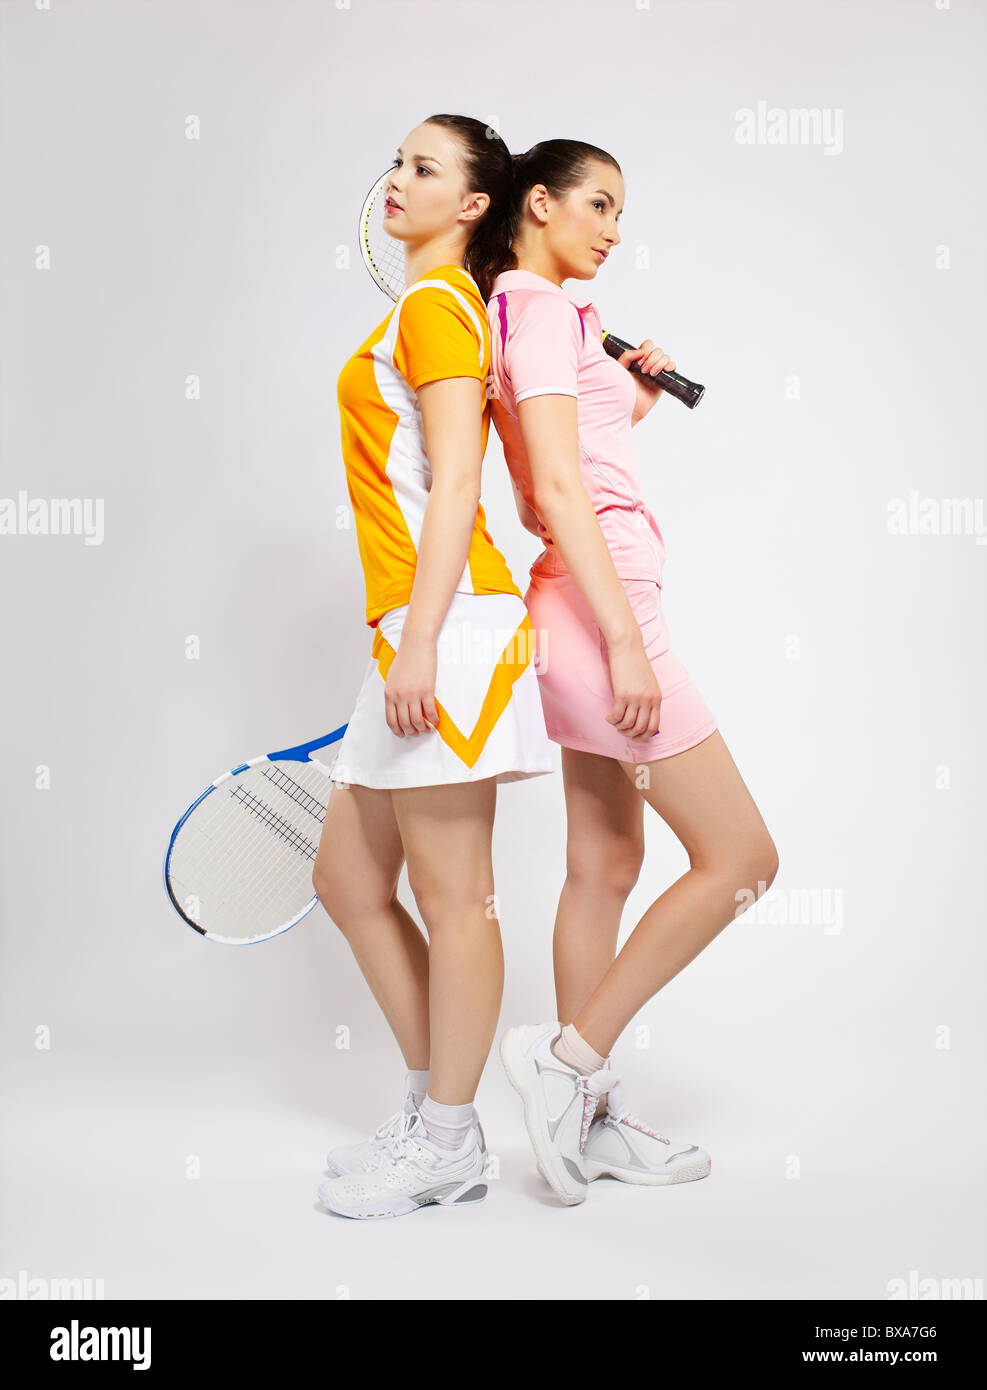 Ritratto di due ragazze sportivo i giocatori di tennis con racchette in piedi di schiena Foto Stock